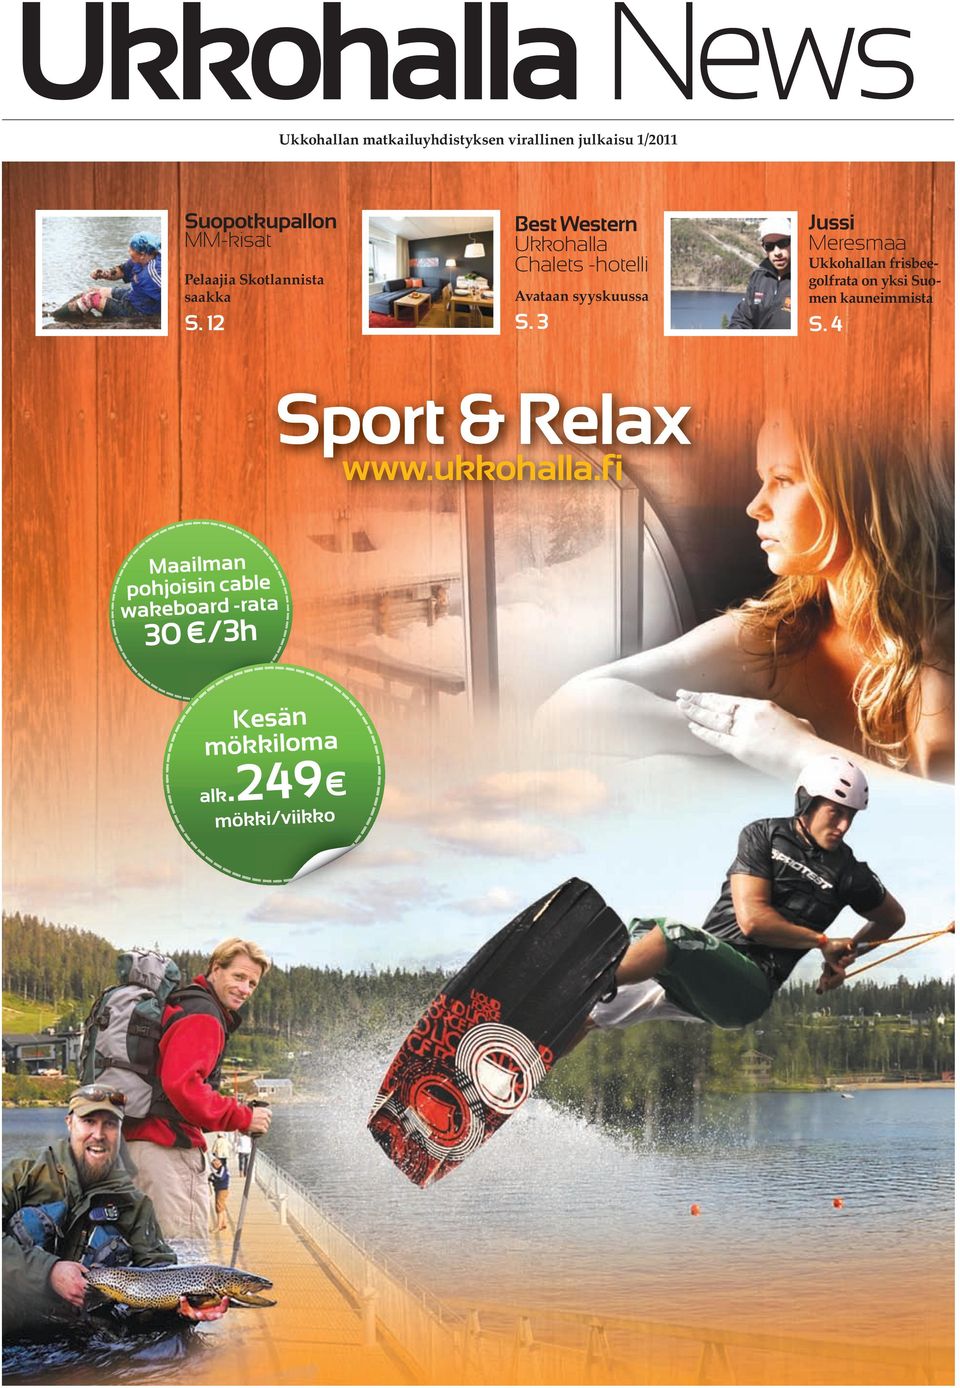 3 Jussi Meresmaa n frisbeegolfrata on yksi Suomen kauneimmista S. 4 Sport & Relax www.